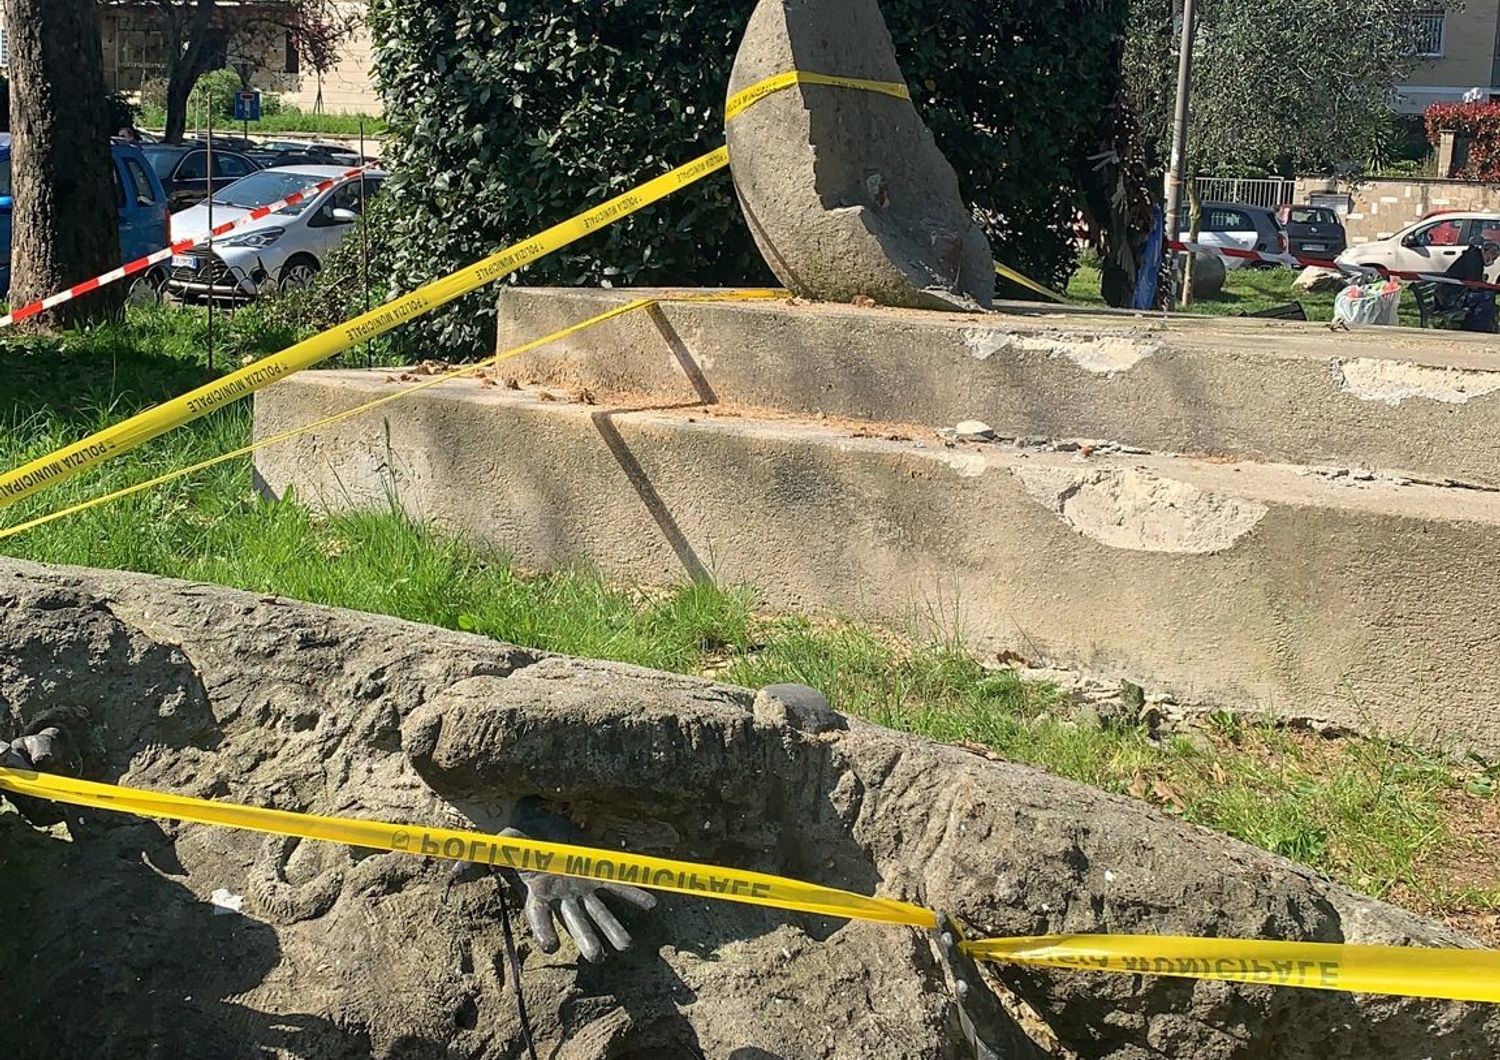 Il monumento che ricorda Walter Rossi, crollato a Roma. Luned&igrave; 27 settembre sar&agrave; rimosso per essere restaurato